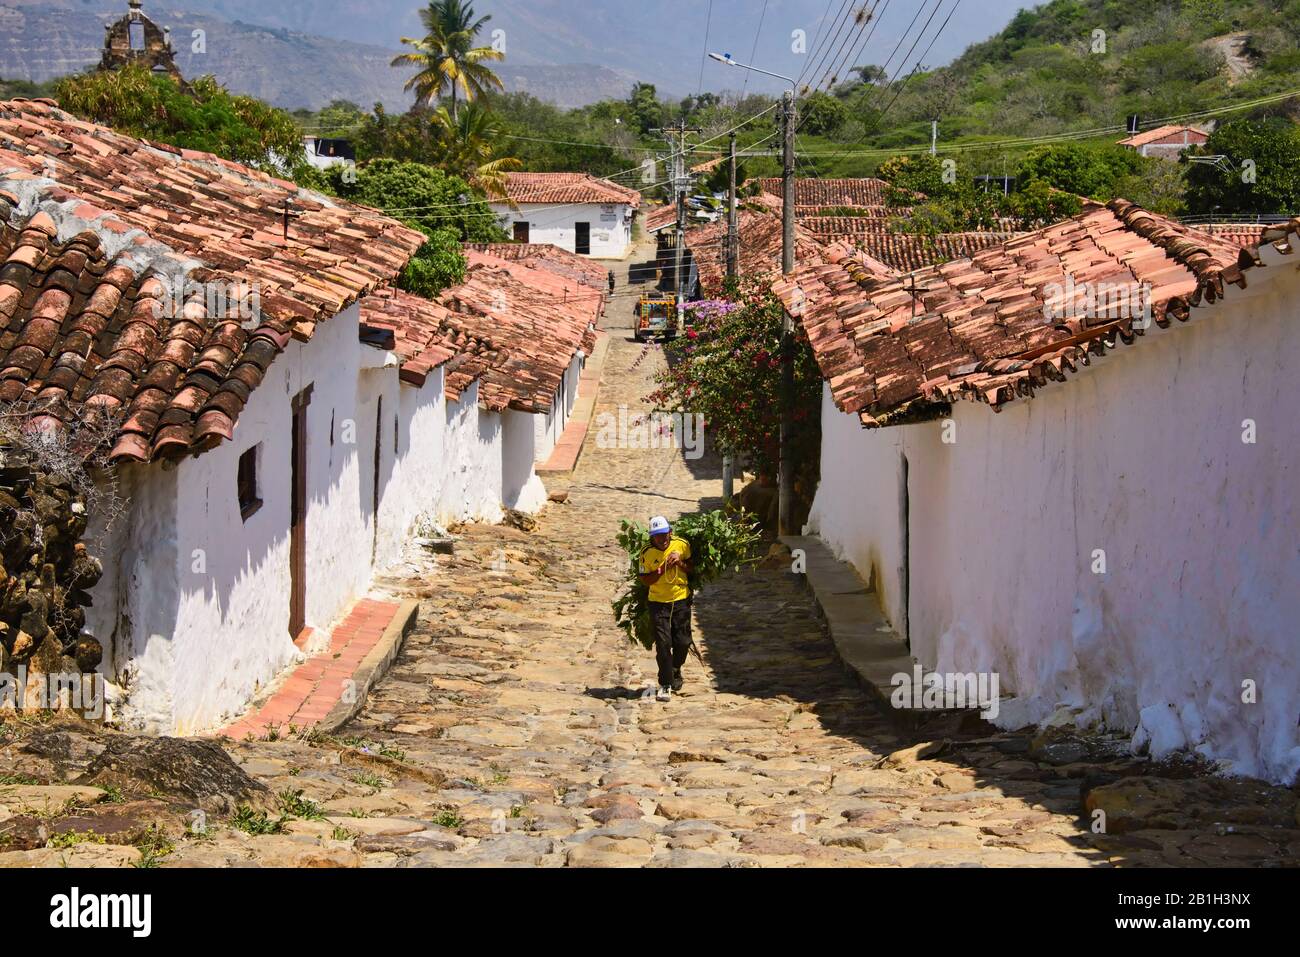 Tetti di tegole rosse e strade acciottolate, Guane, Santander, Colombia Foto Stock